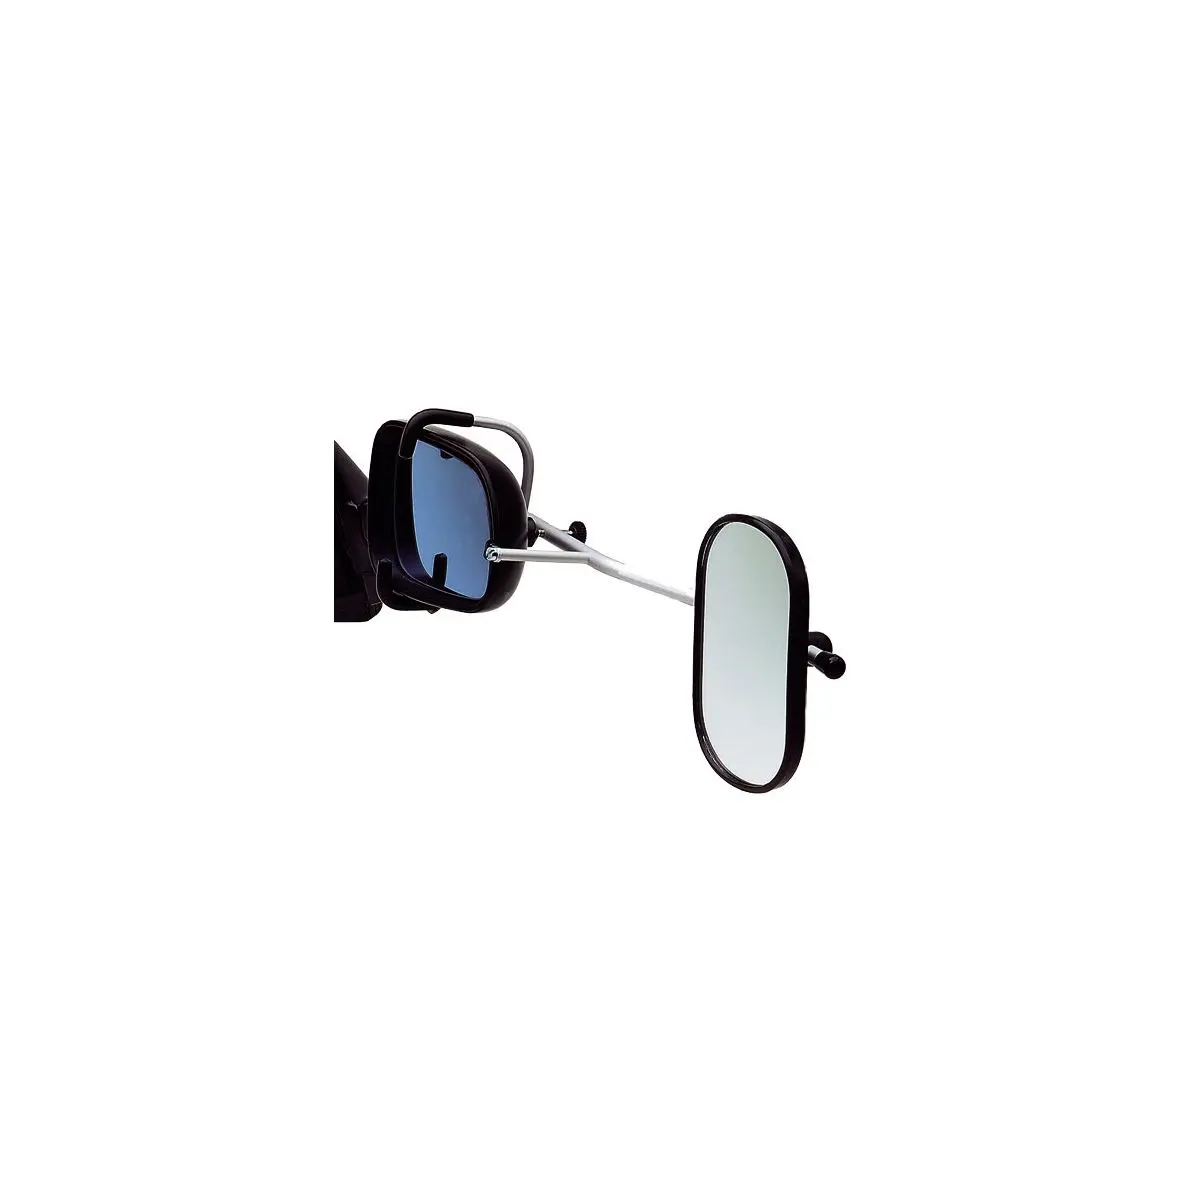 Oglinda pentru rulota Oppi Ford Mondeo - din 02/2015